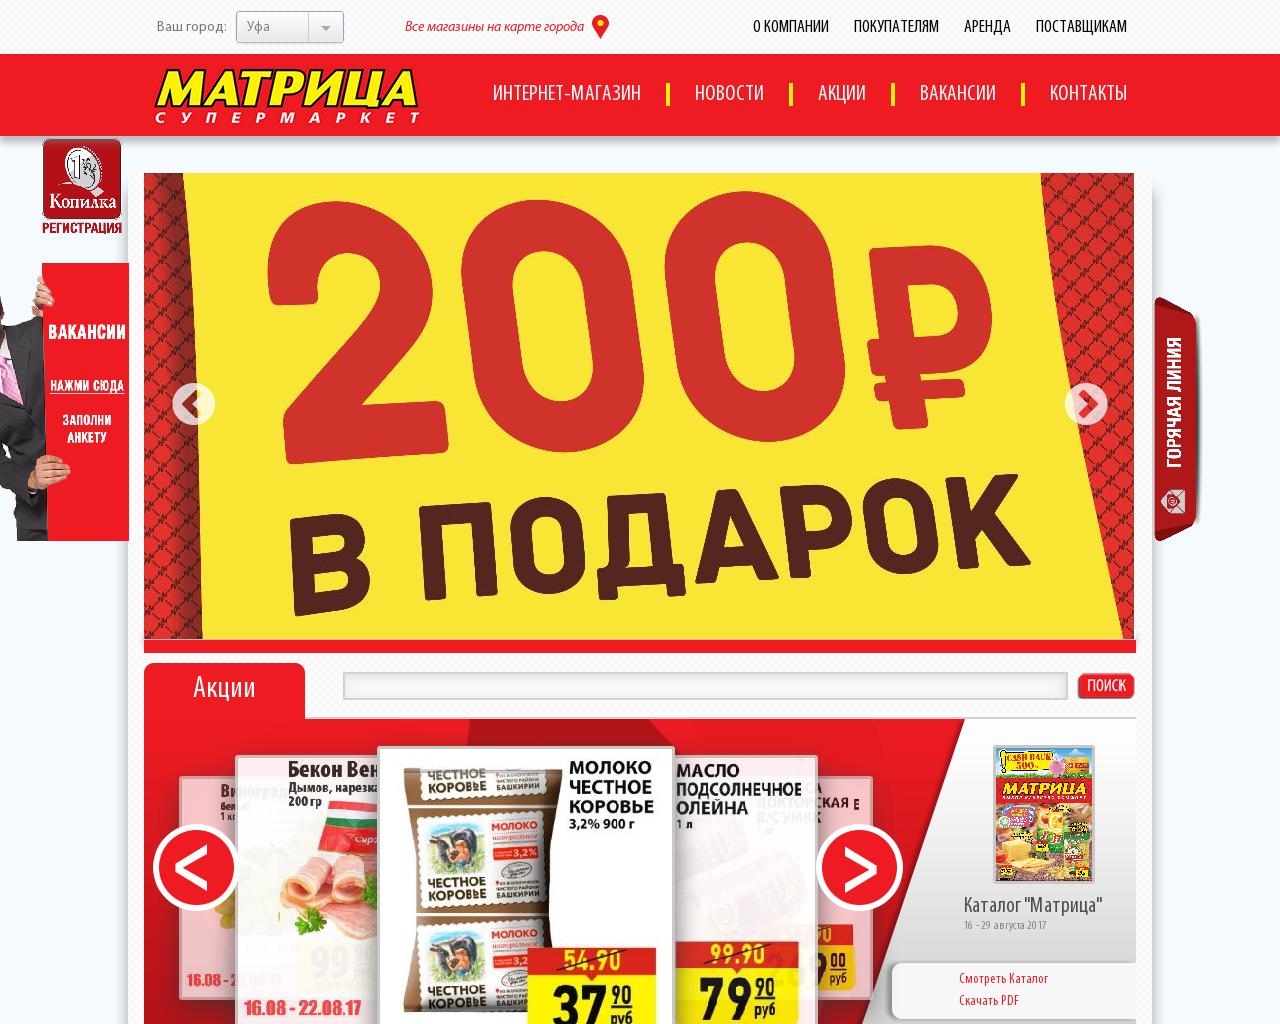 Изображение сайта matrixufa.ru в разрешении 1280x1024